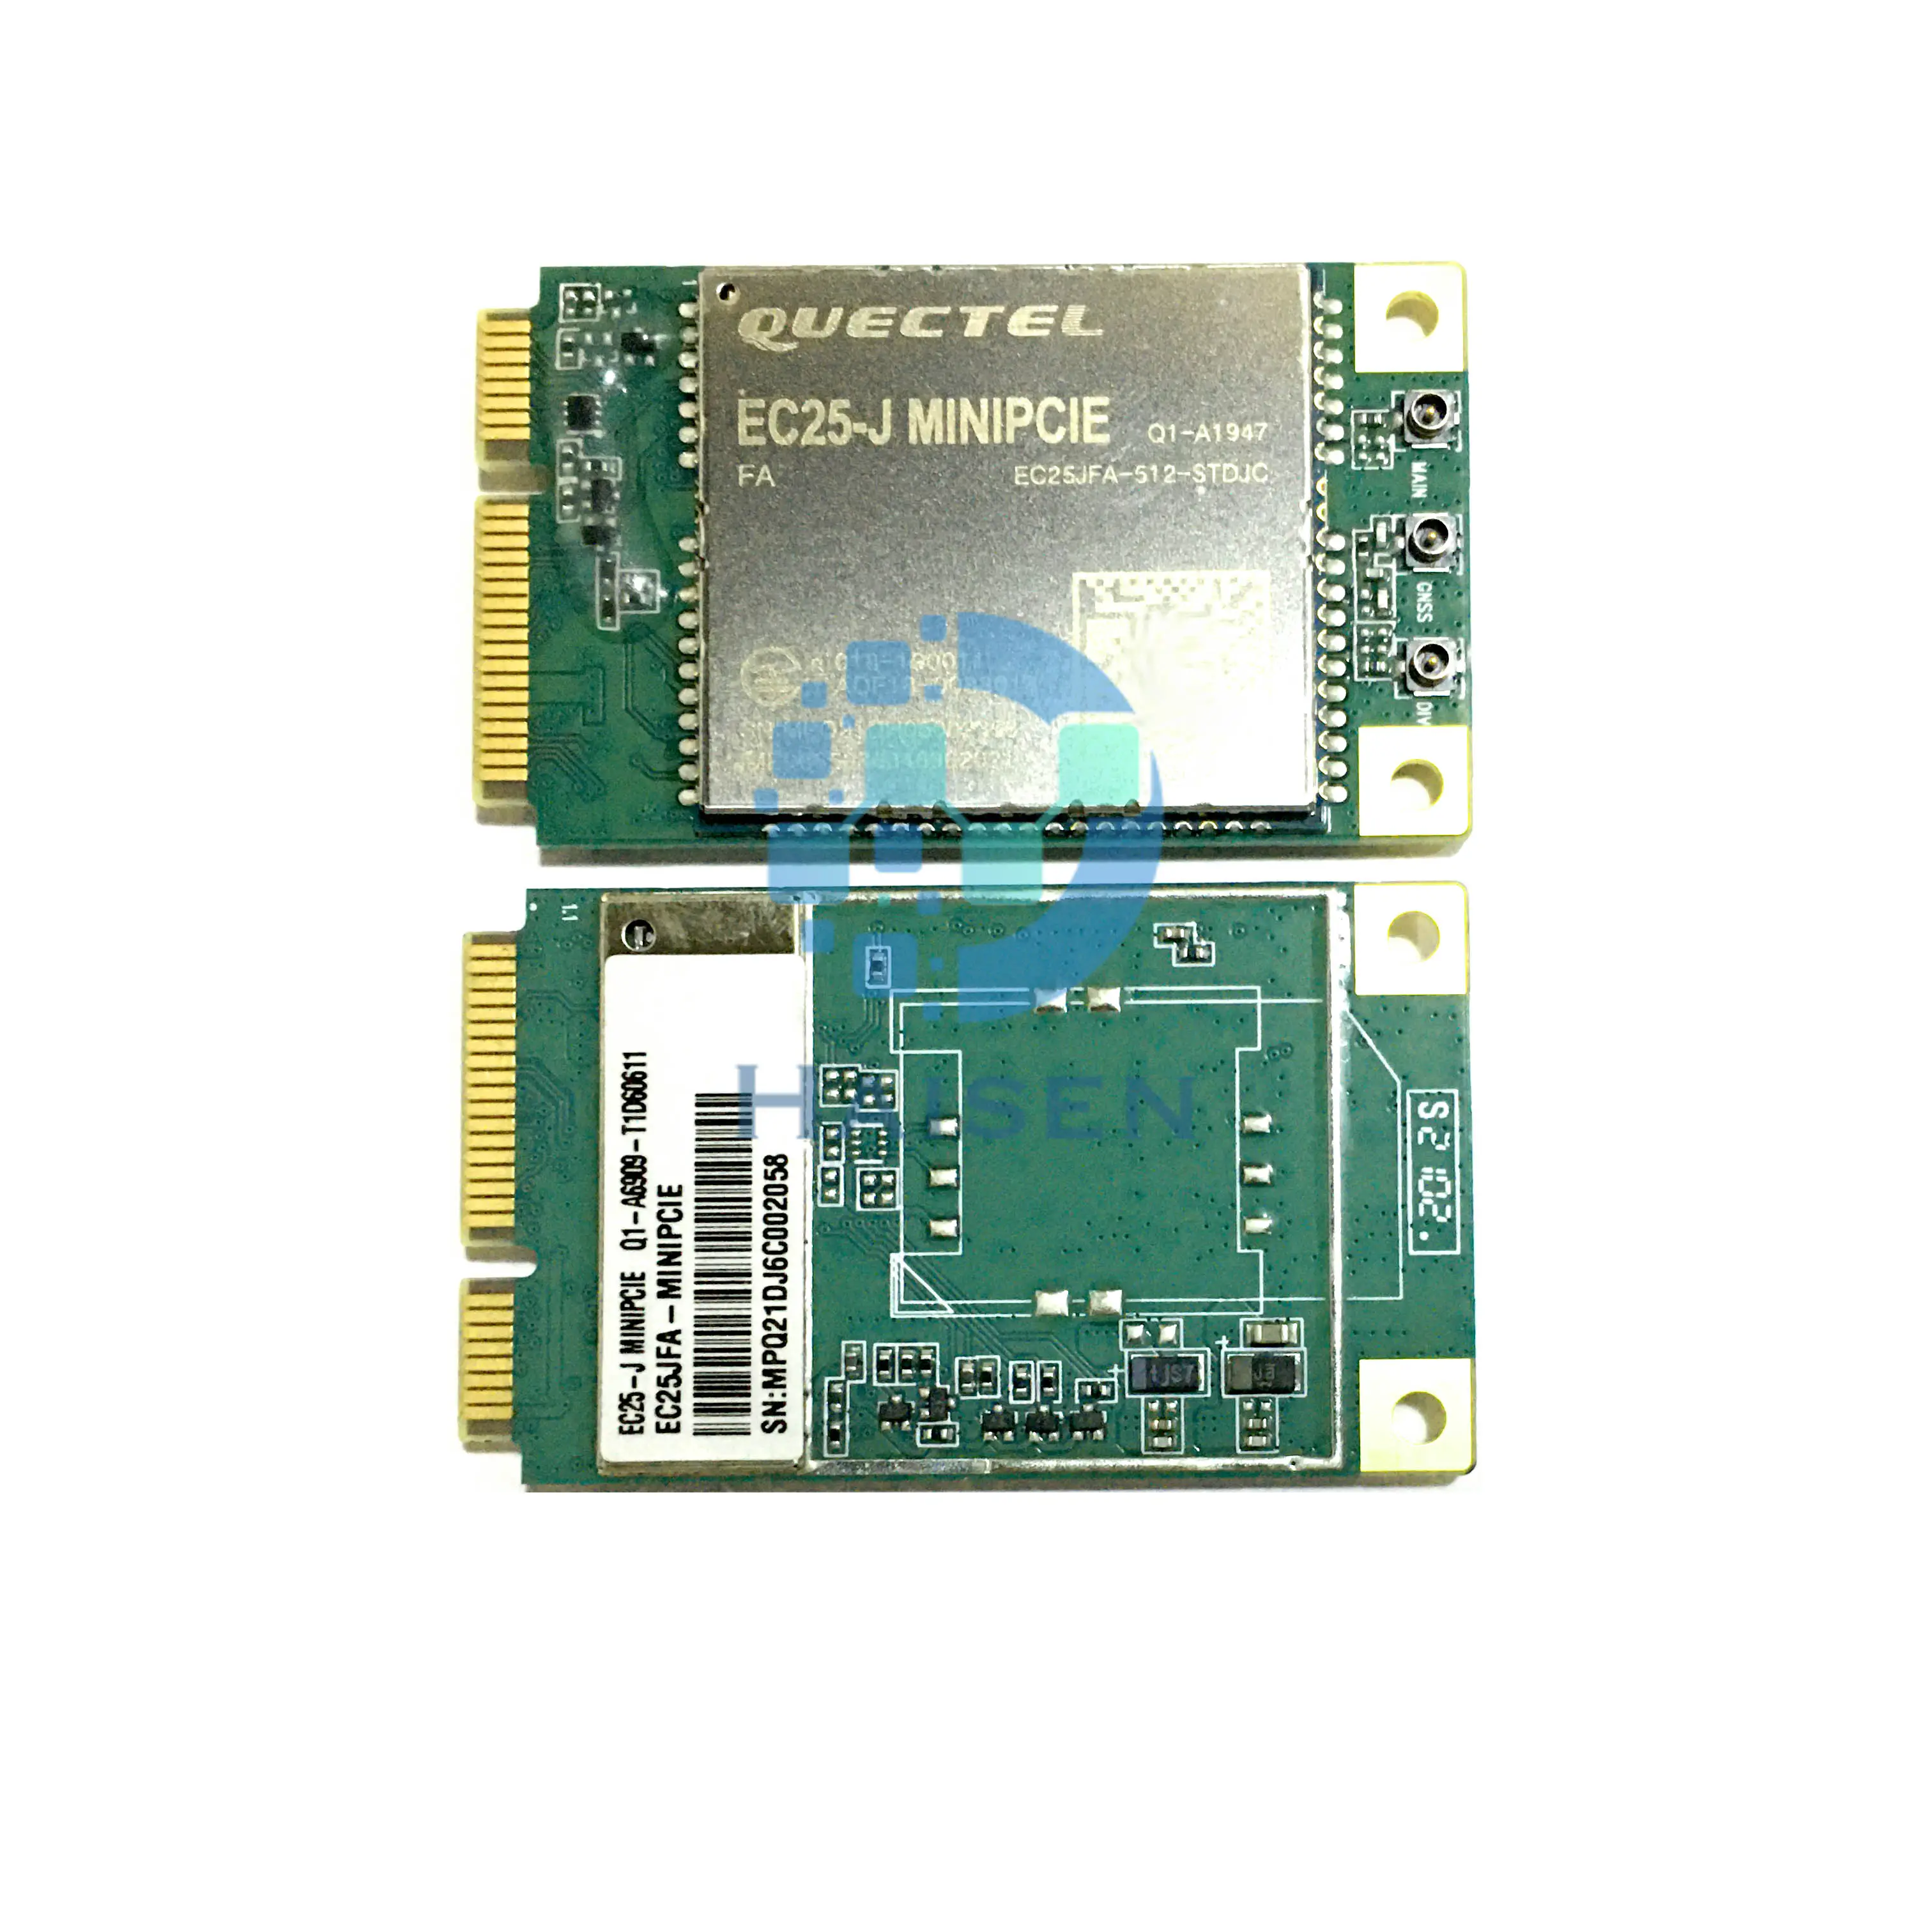 HAISEN QUECTEL 4G LTE Cat4 module EC25JFA-512-STD MINIPCIE EC25-J mini PCIE EC25JFA-MINIPCIE M2M and IoT application for Japan